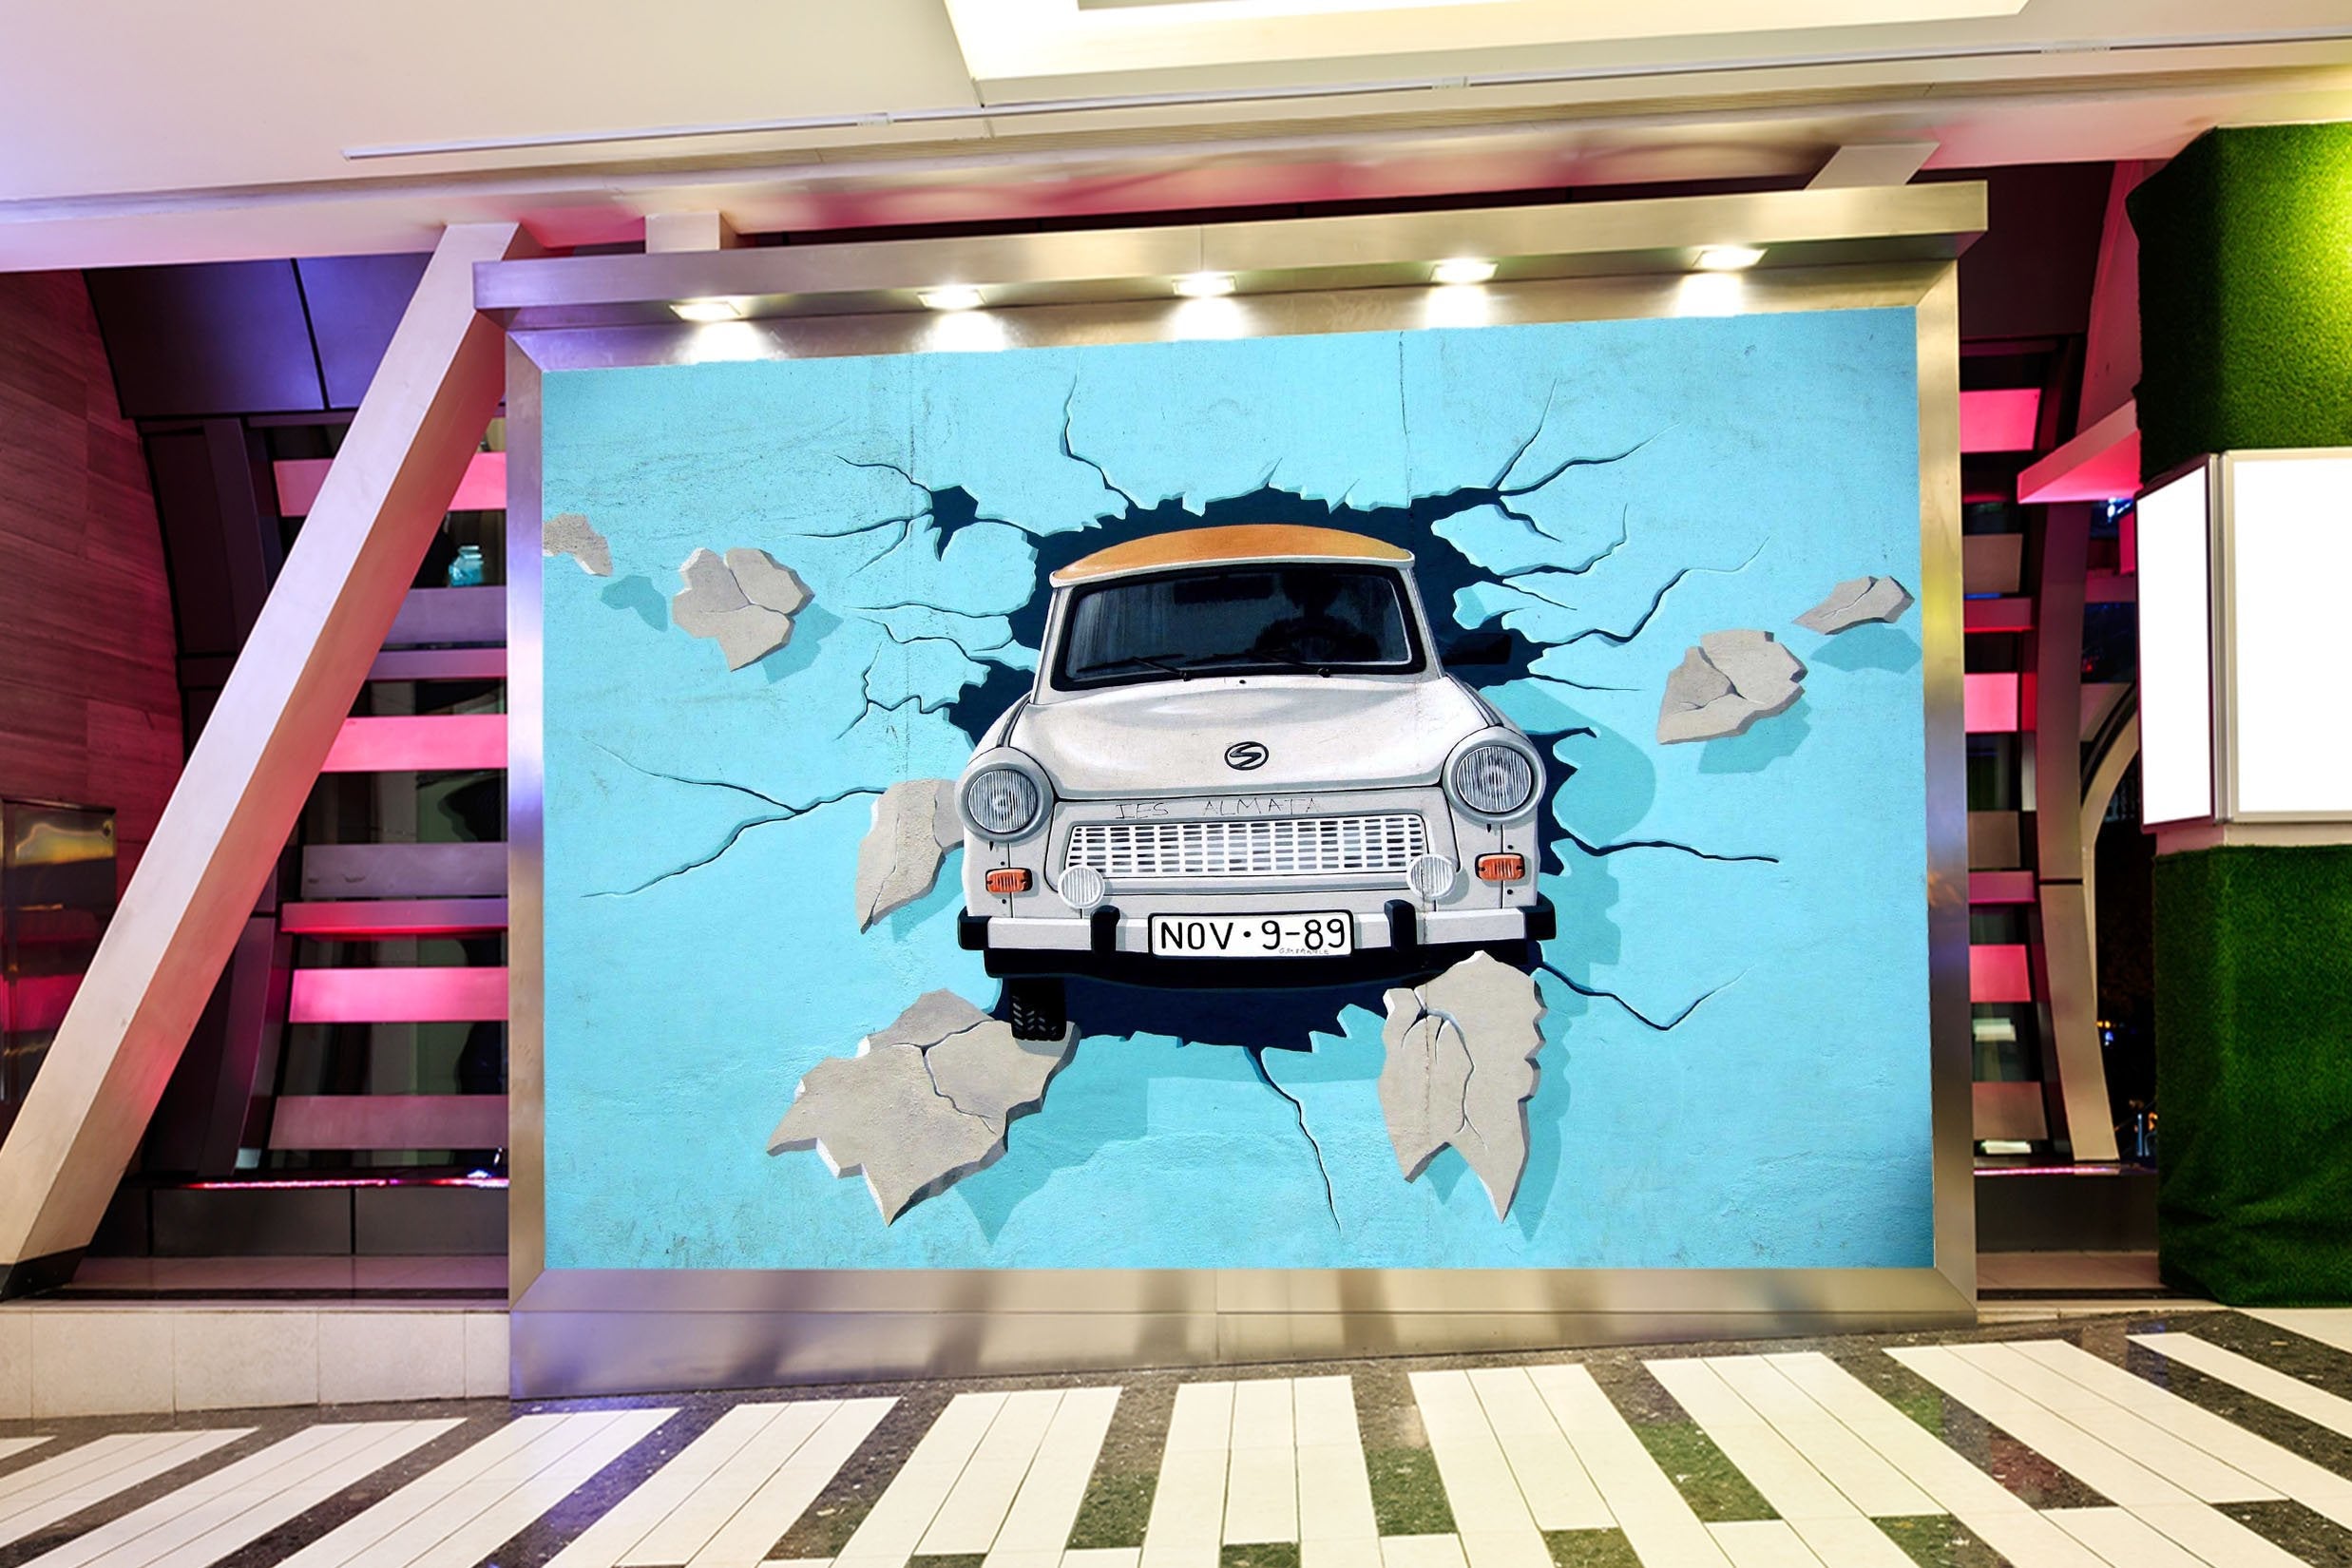 3D car collides into the wall 26 Wall Murals Wallpaper AJ Wallpaper 2 